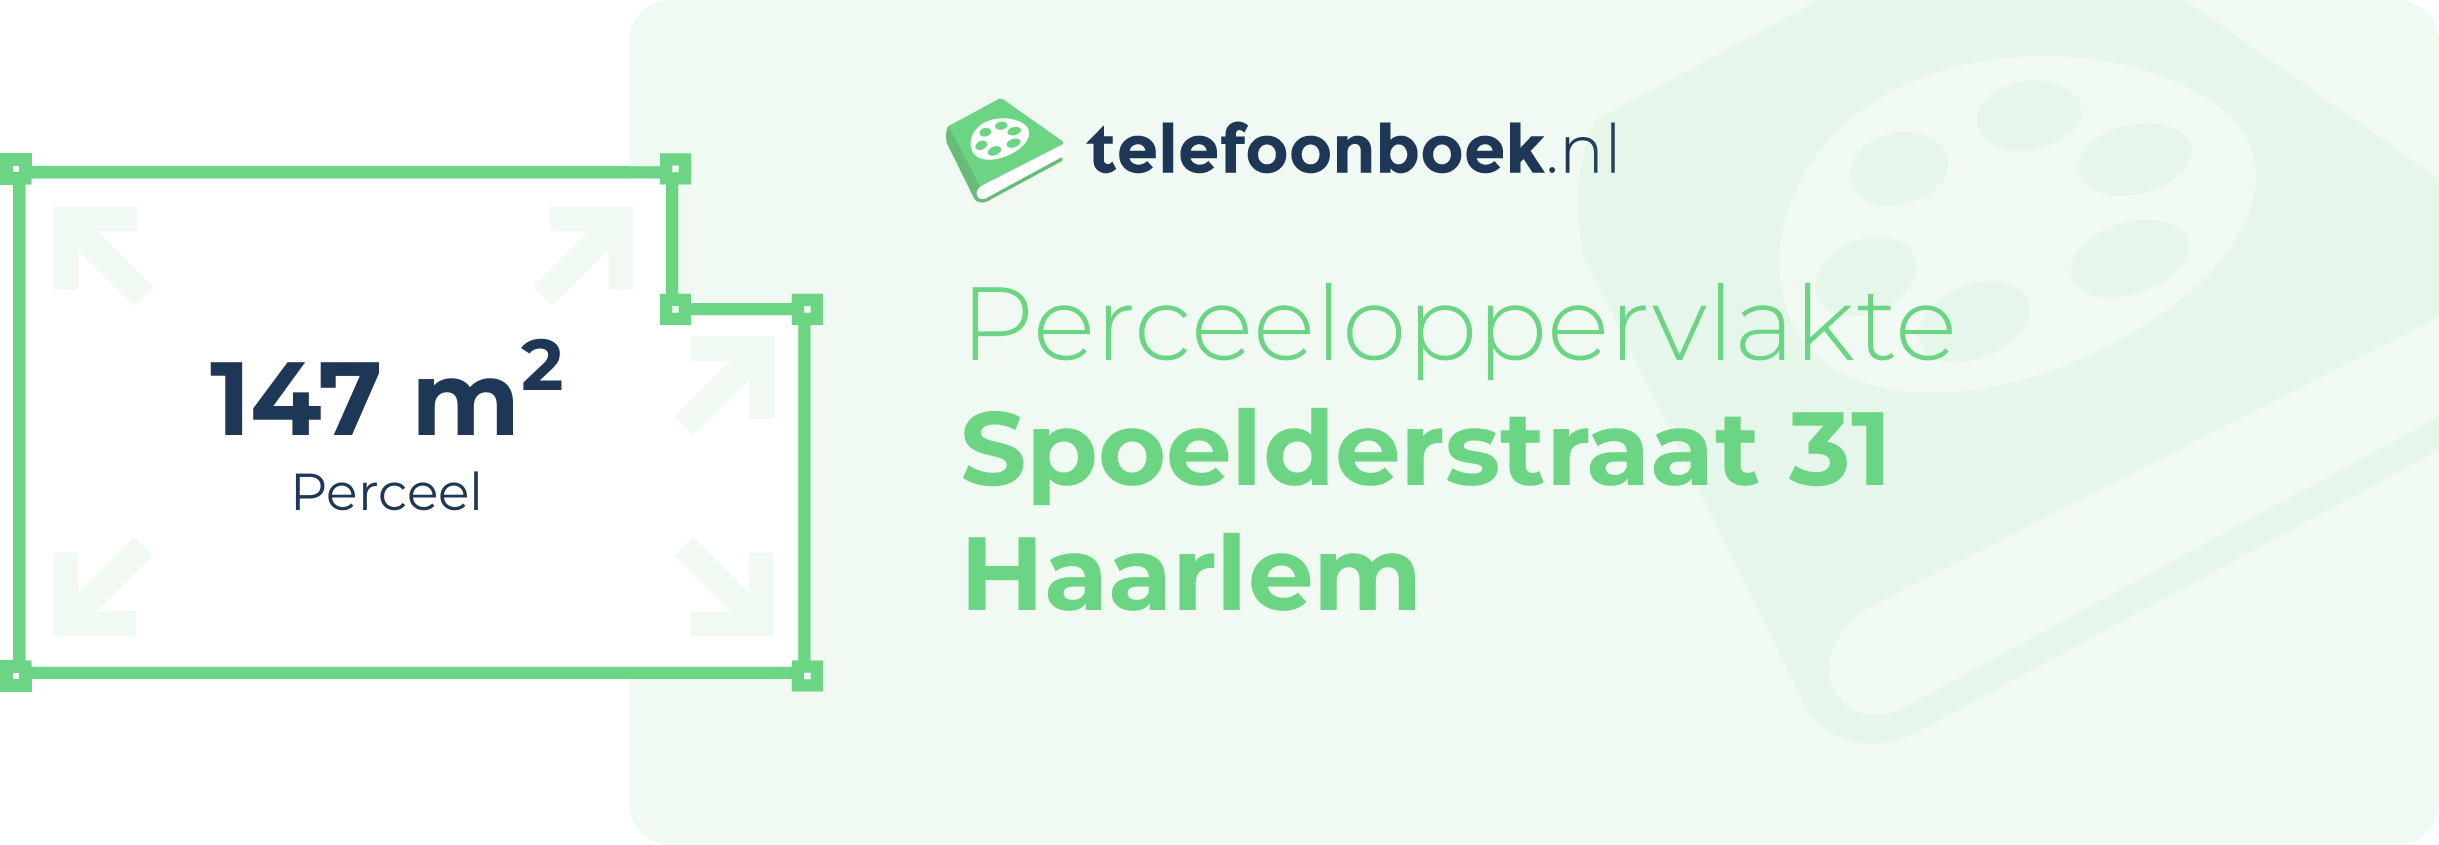 Perceeloppervlakte Spoelderstraat 31 Haarlem